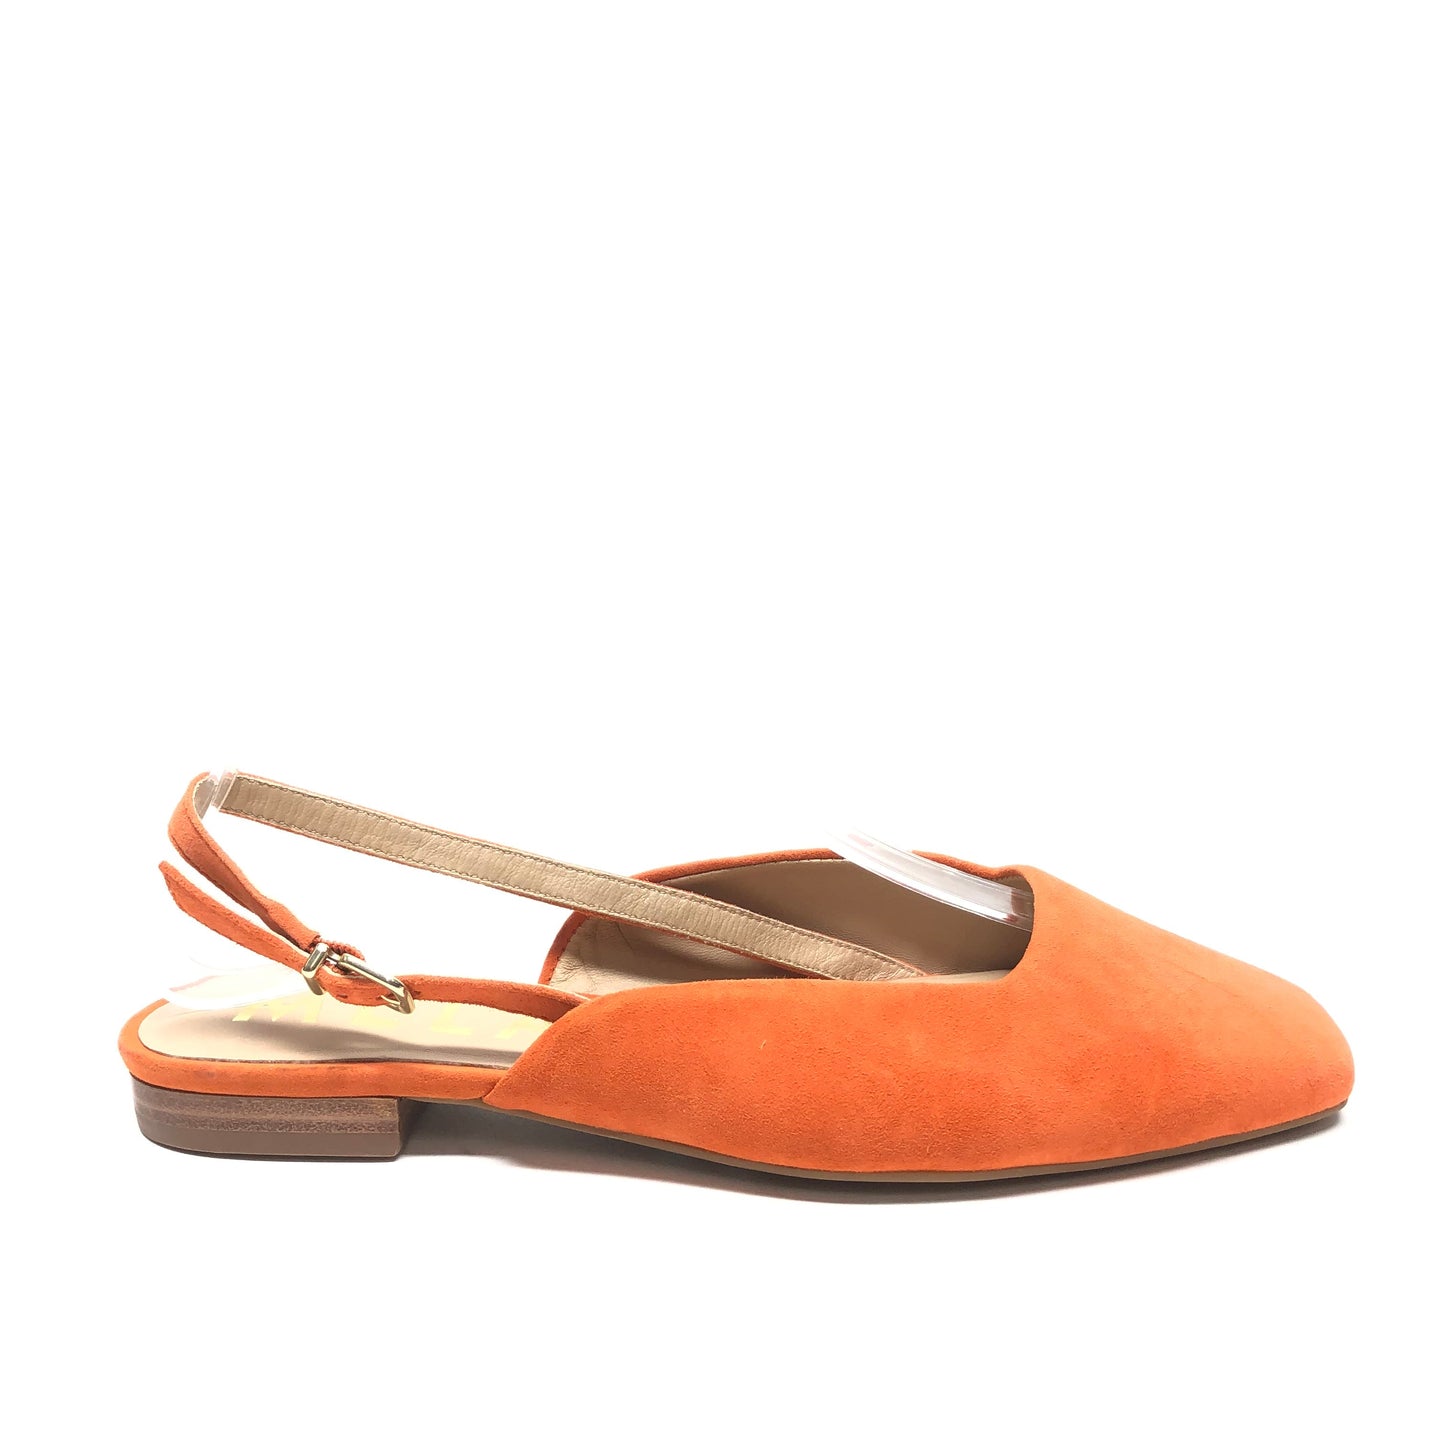 Orange Shoes Flats Antonio Melani, Size 6.5